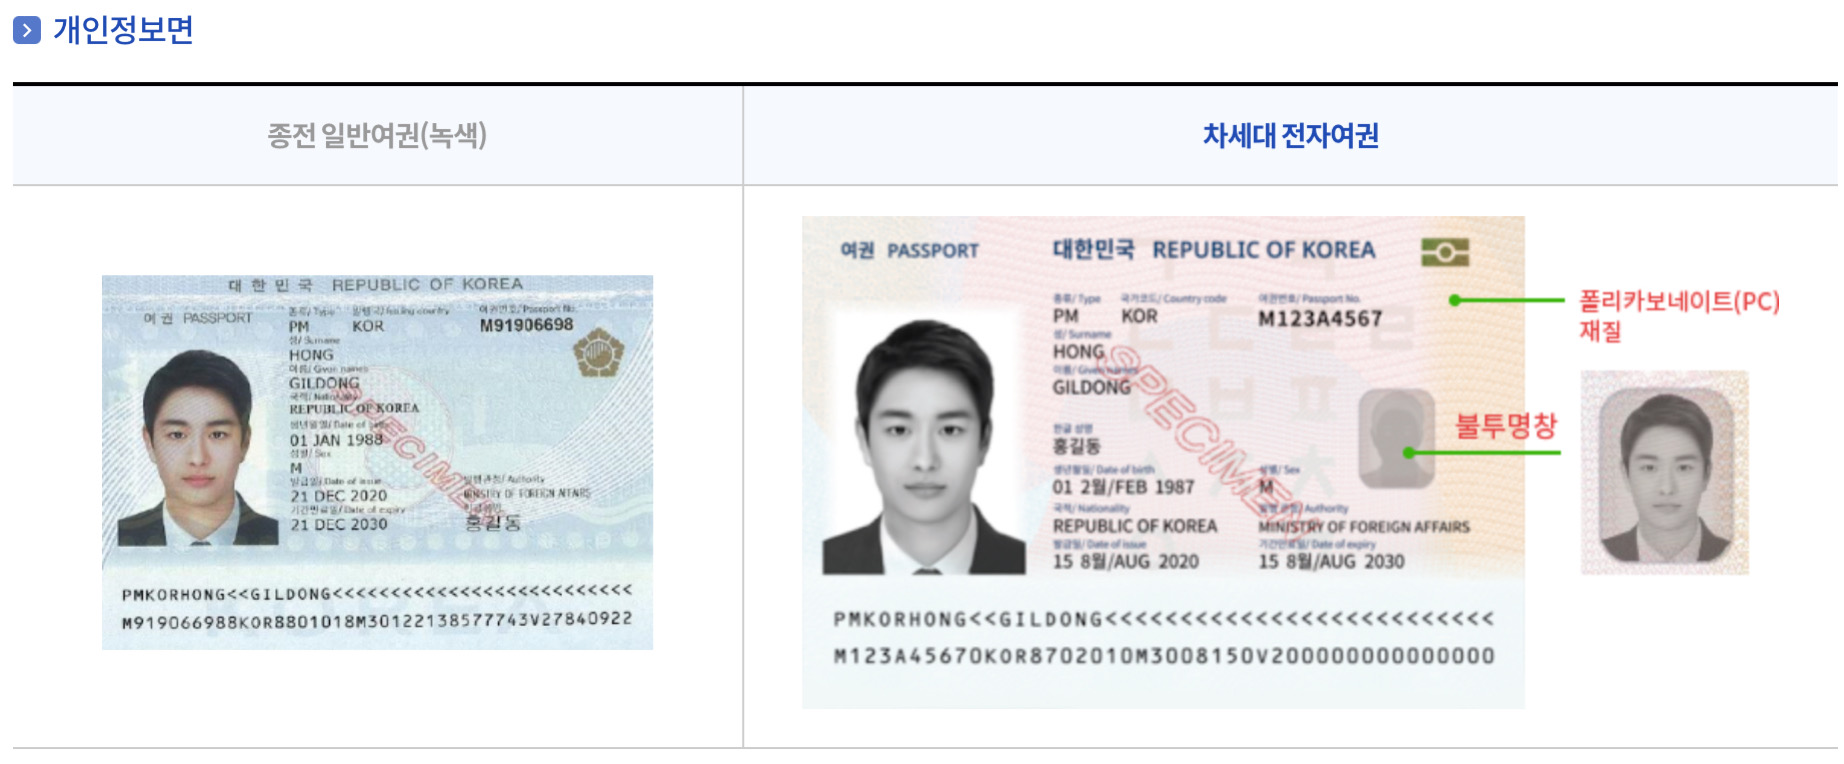 일반여권과 전자여권비교